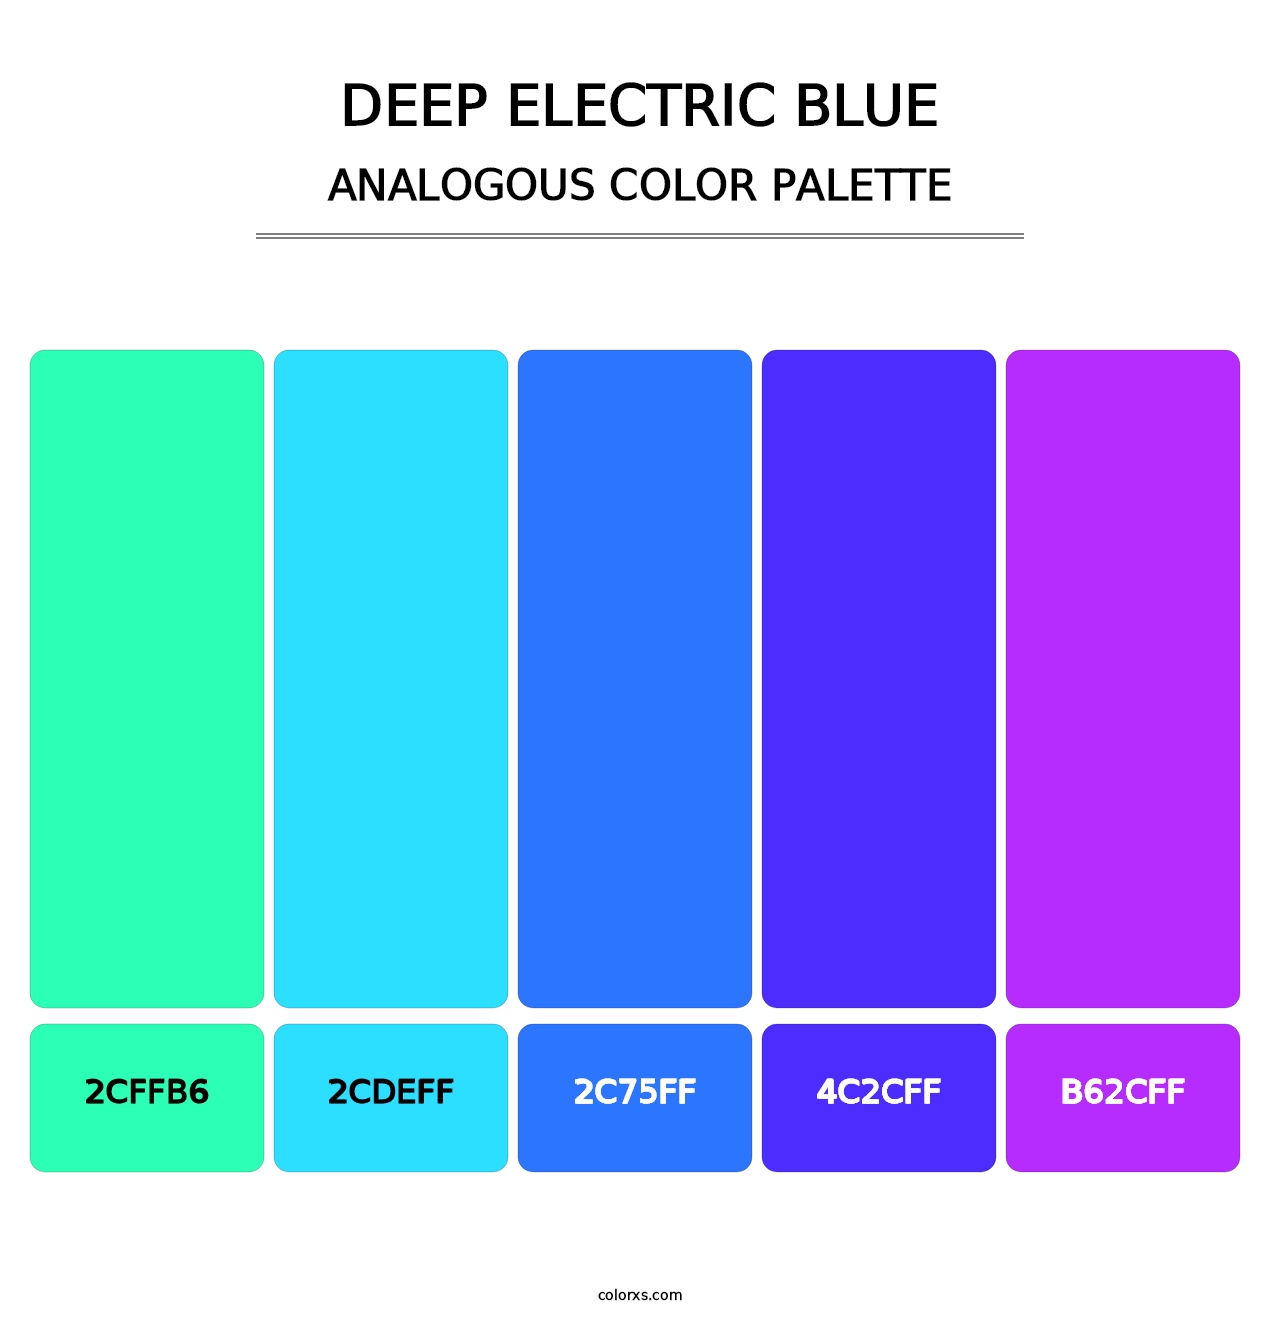 Deep Electric Blue - Analogous Color Palette